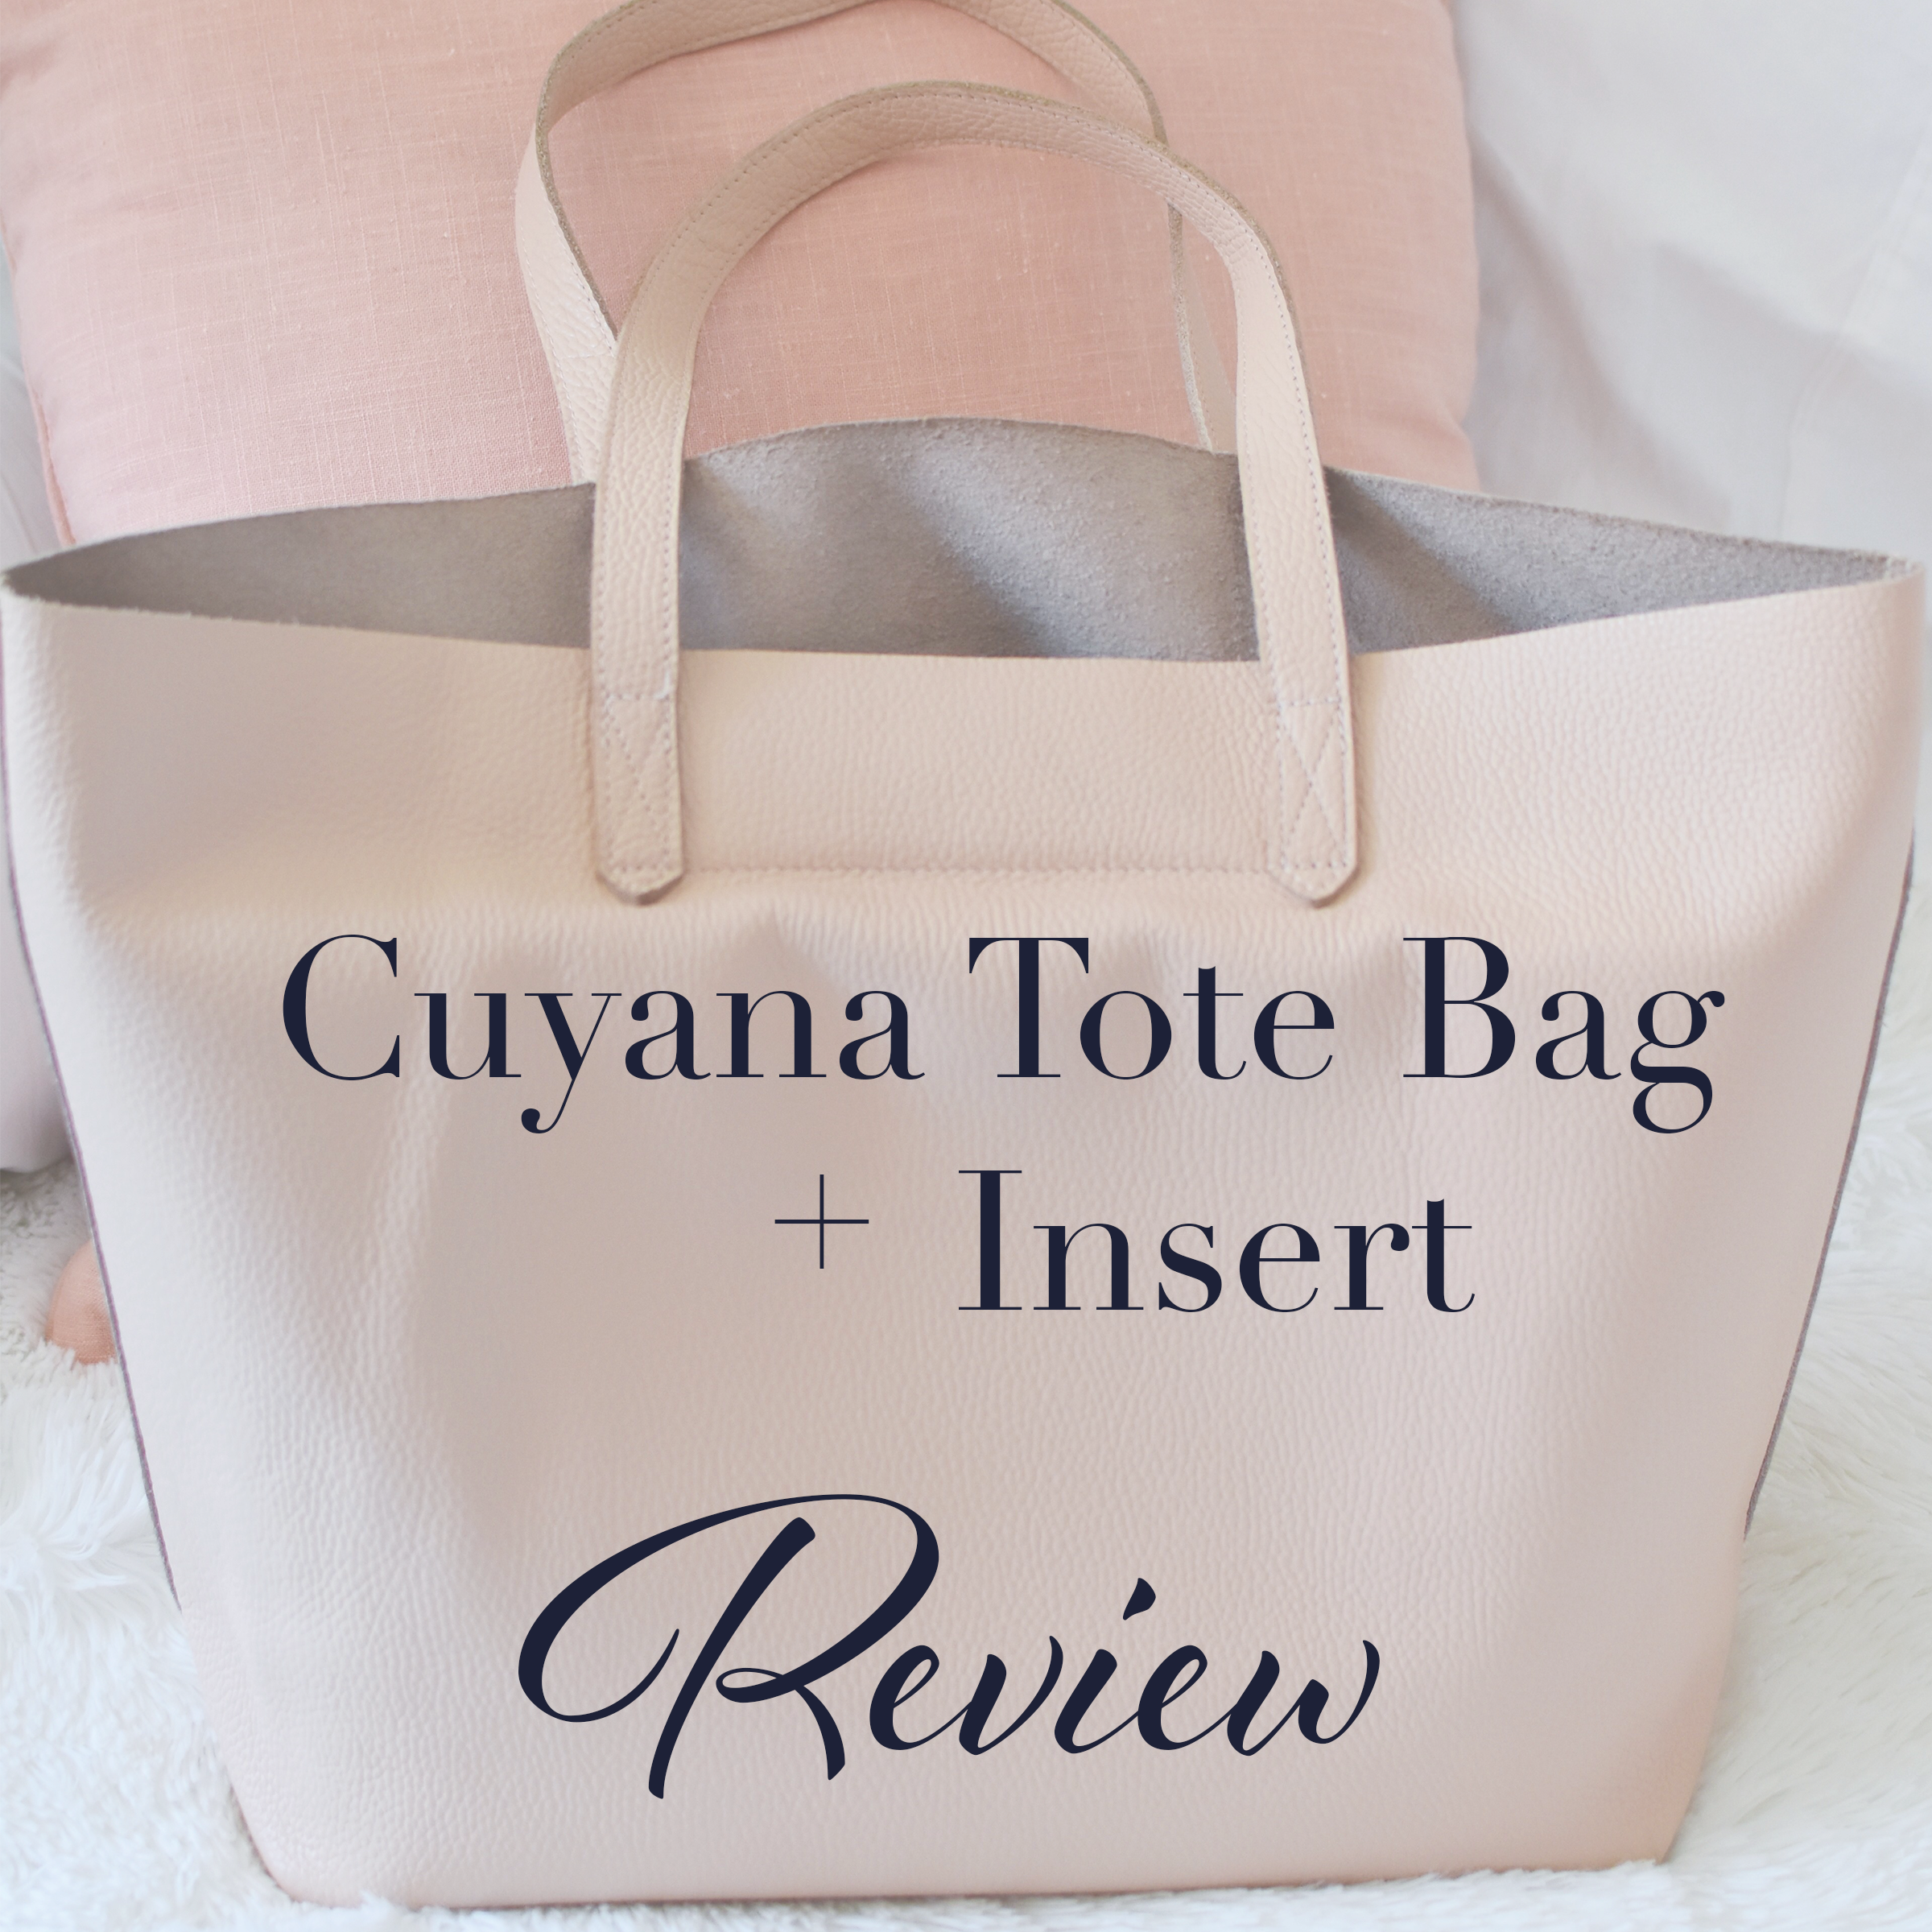 Cuyana Tote Bag Review